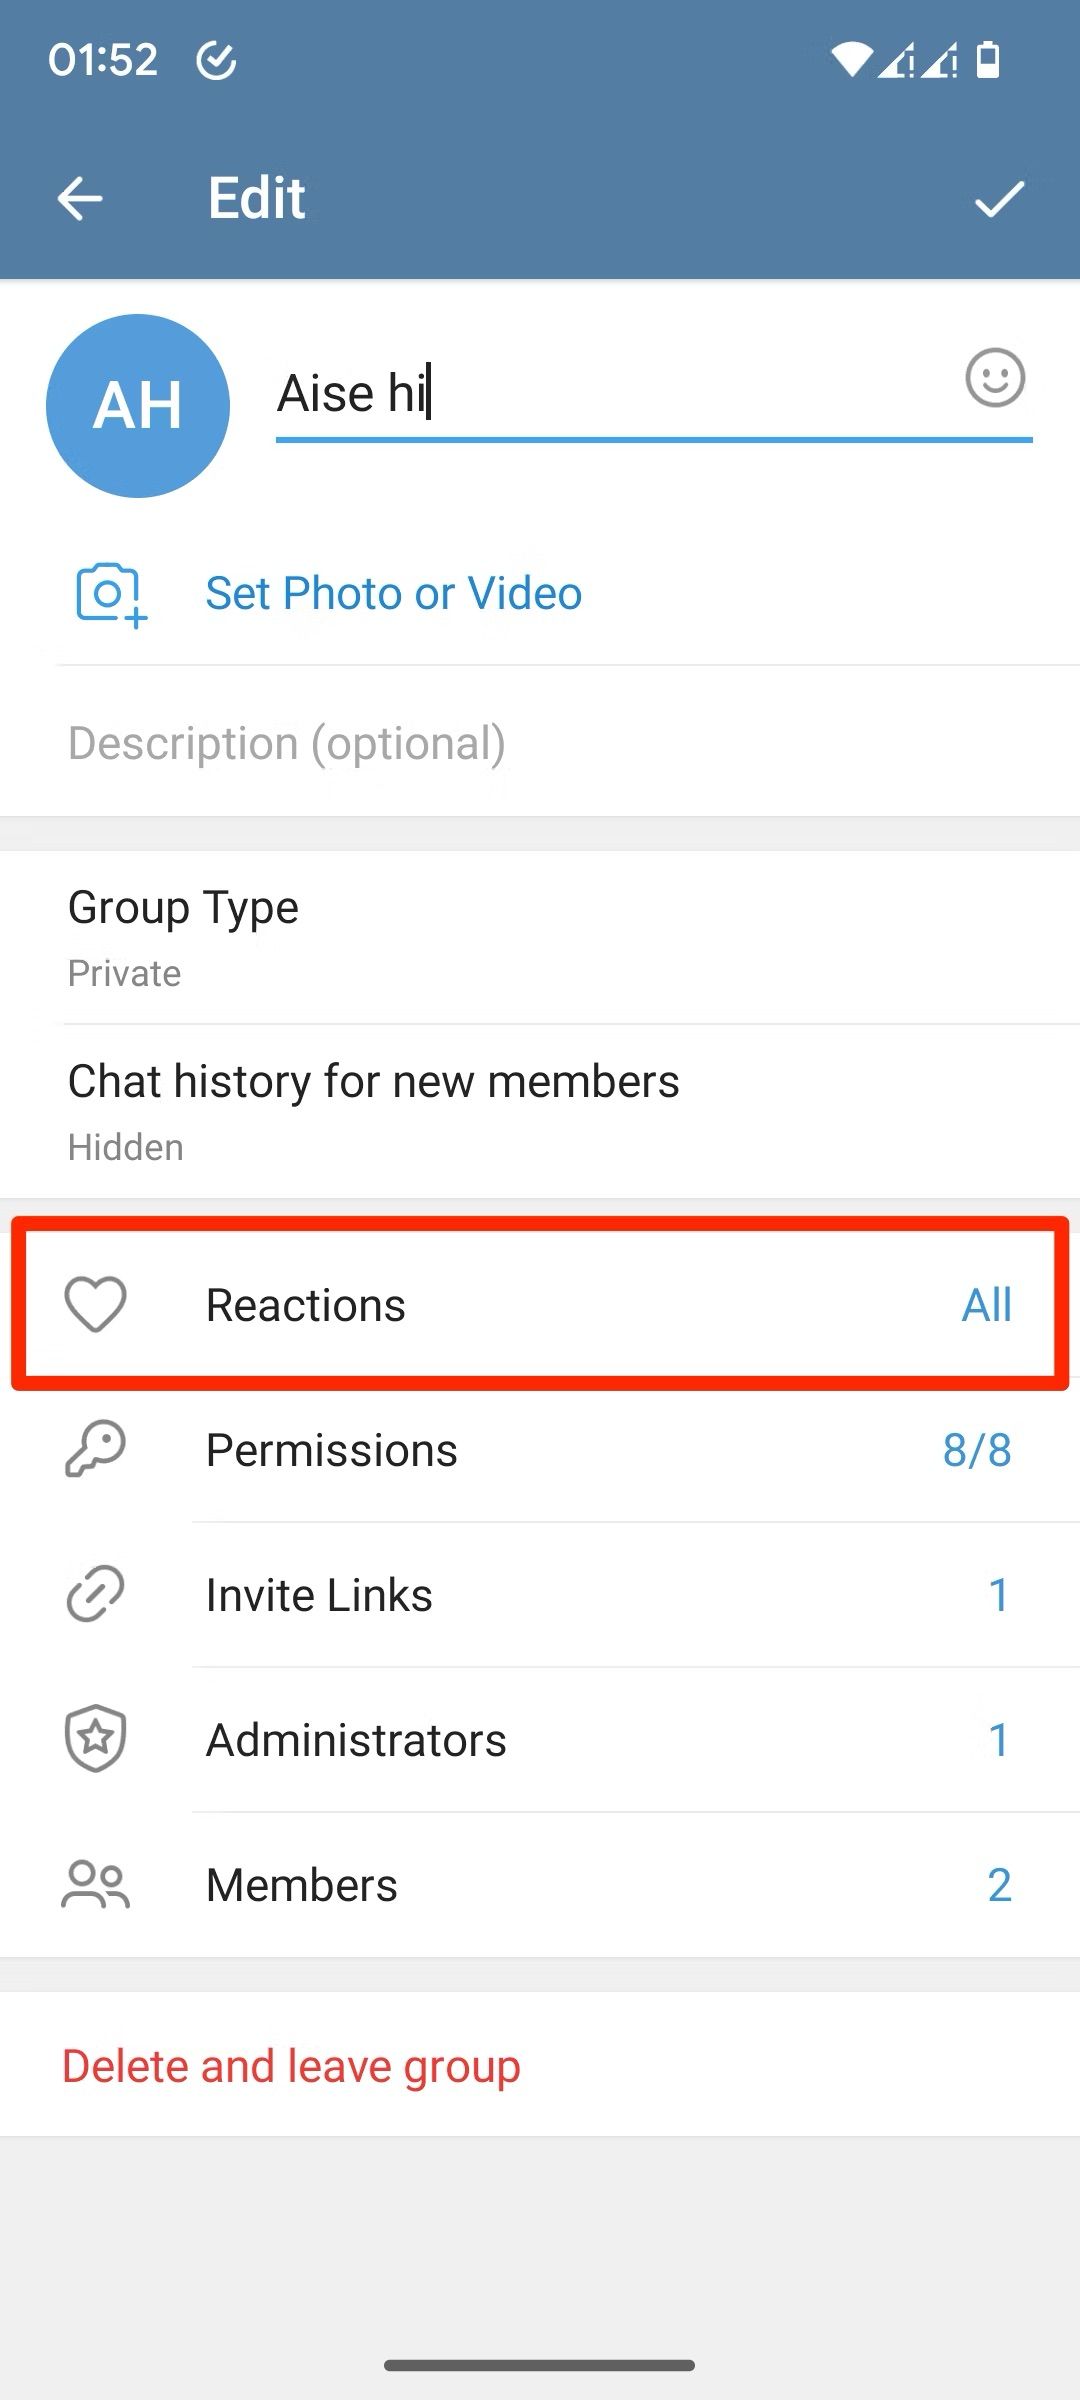 Captura de tela da página de edição do grupo Telegram mostrando as configurações de reações